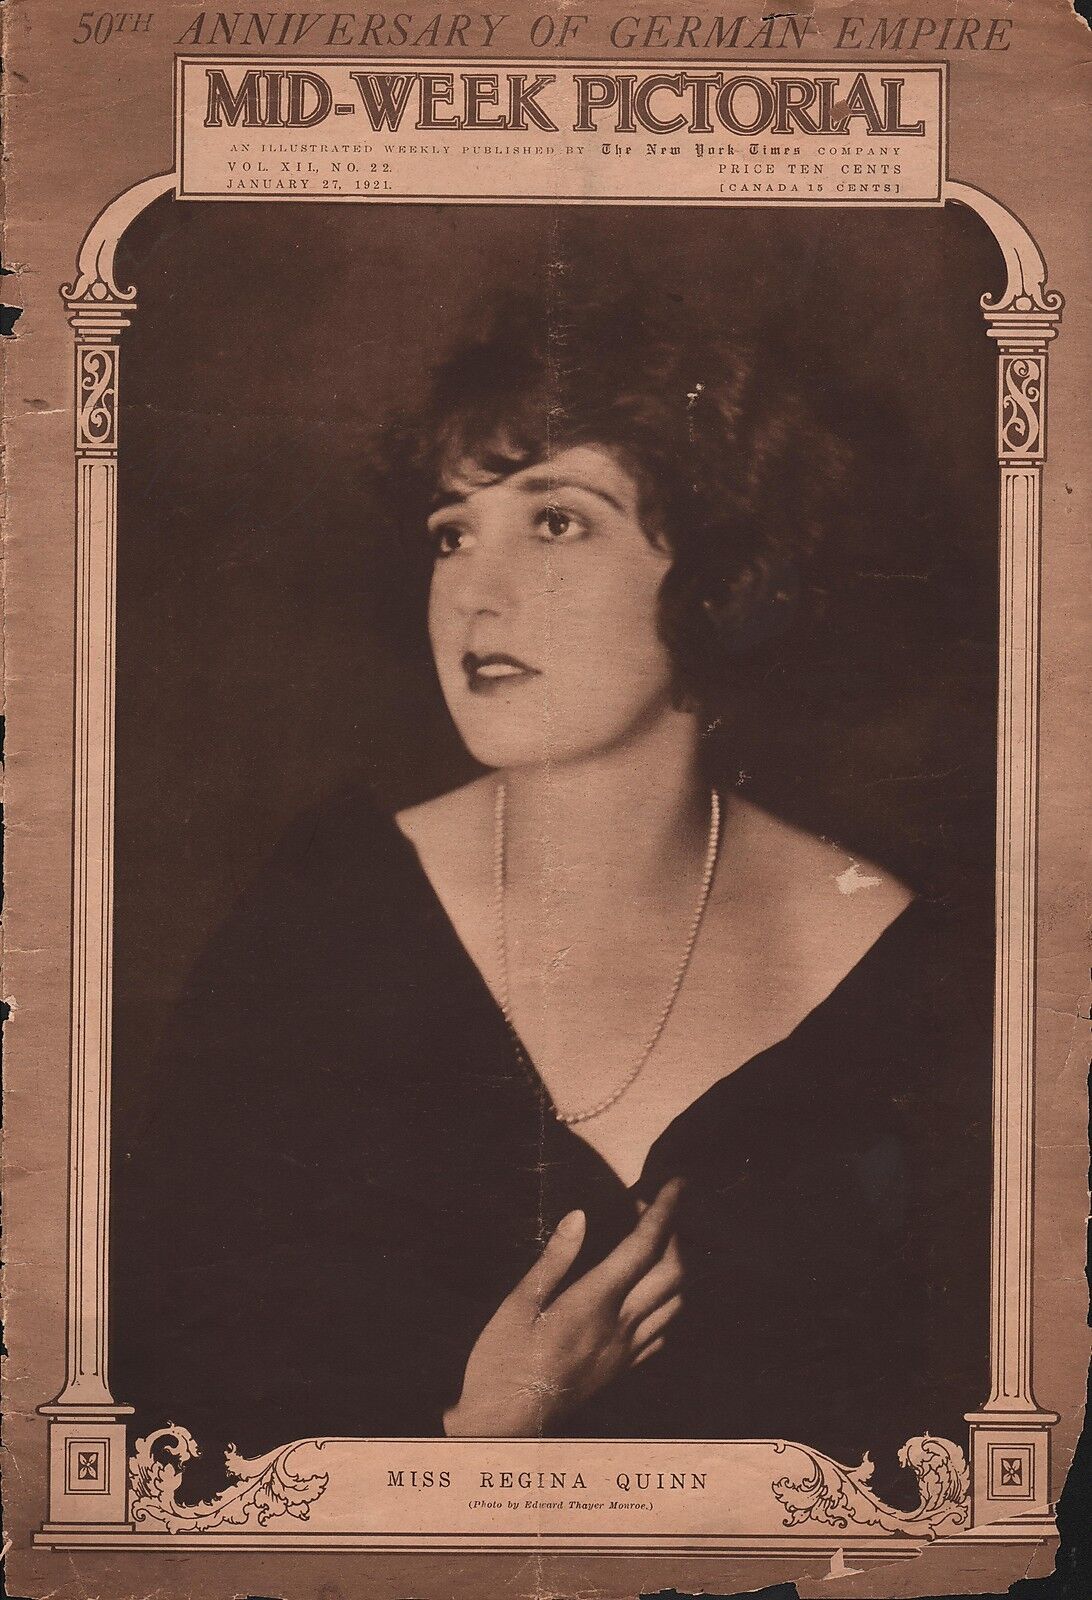 Miss Regina Quinn Photo Cover of 1921